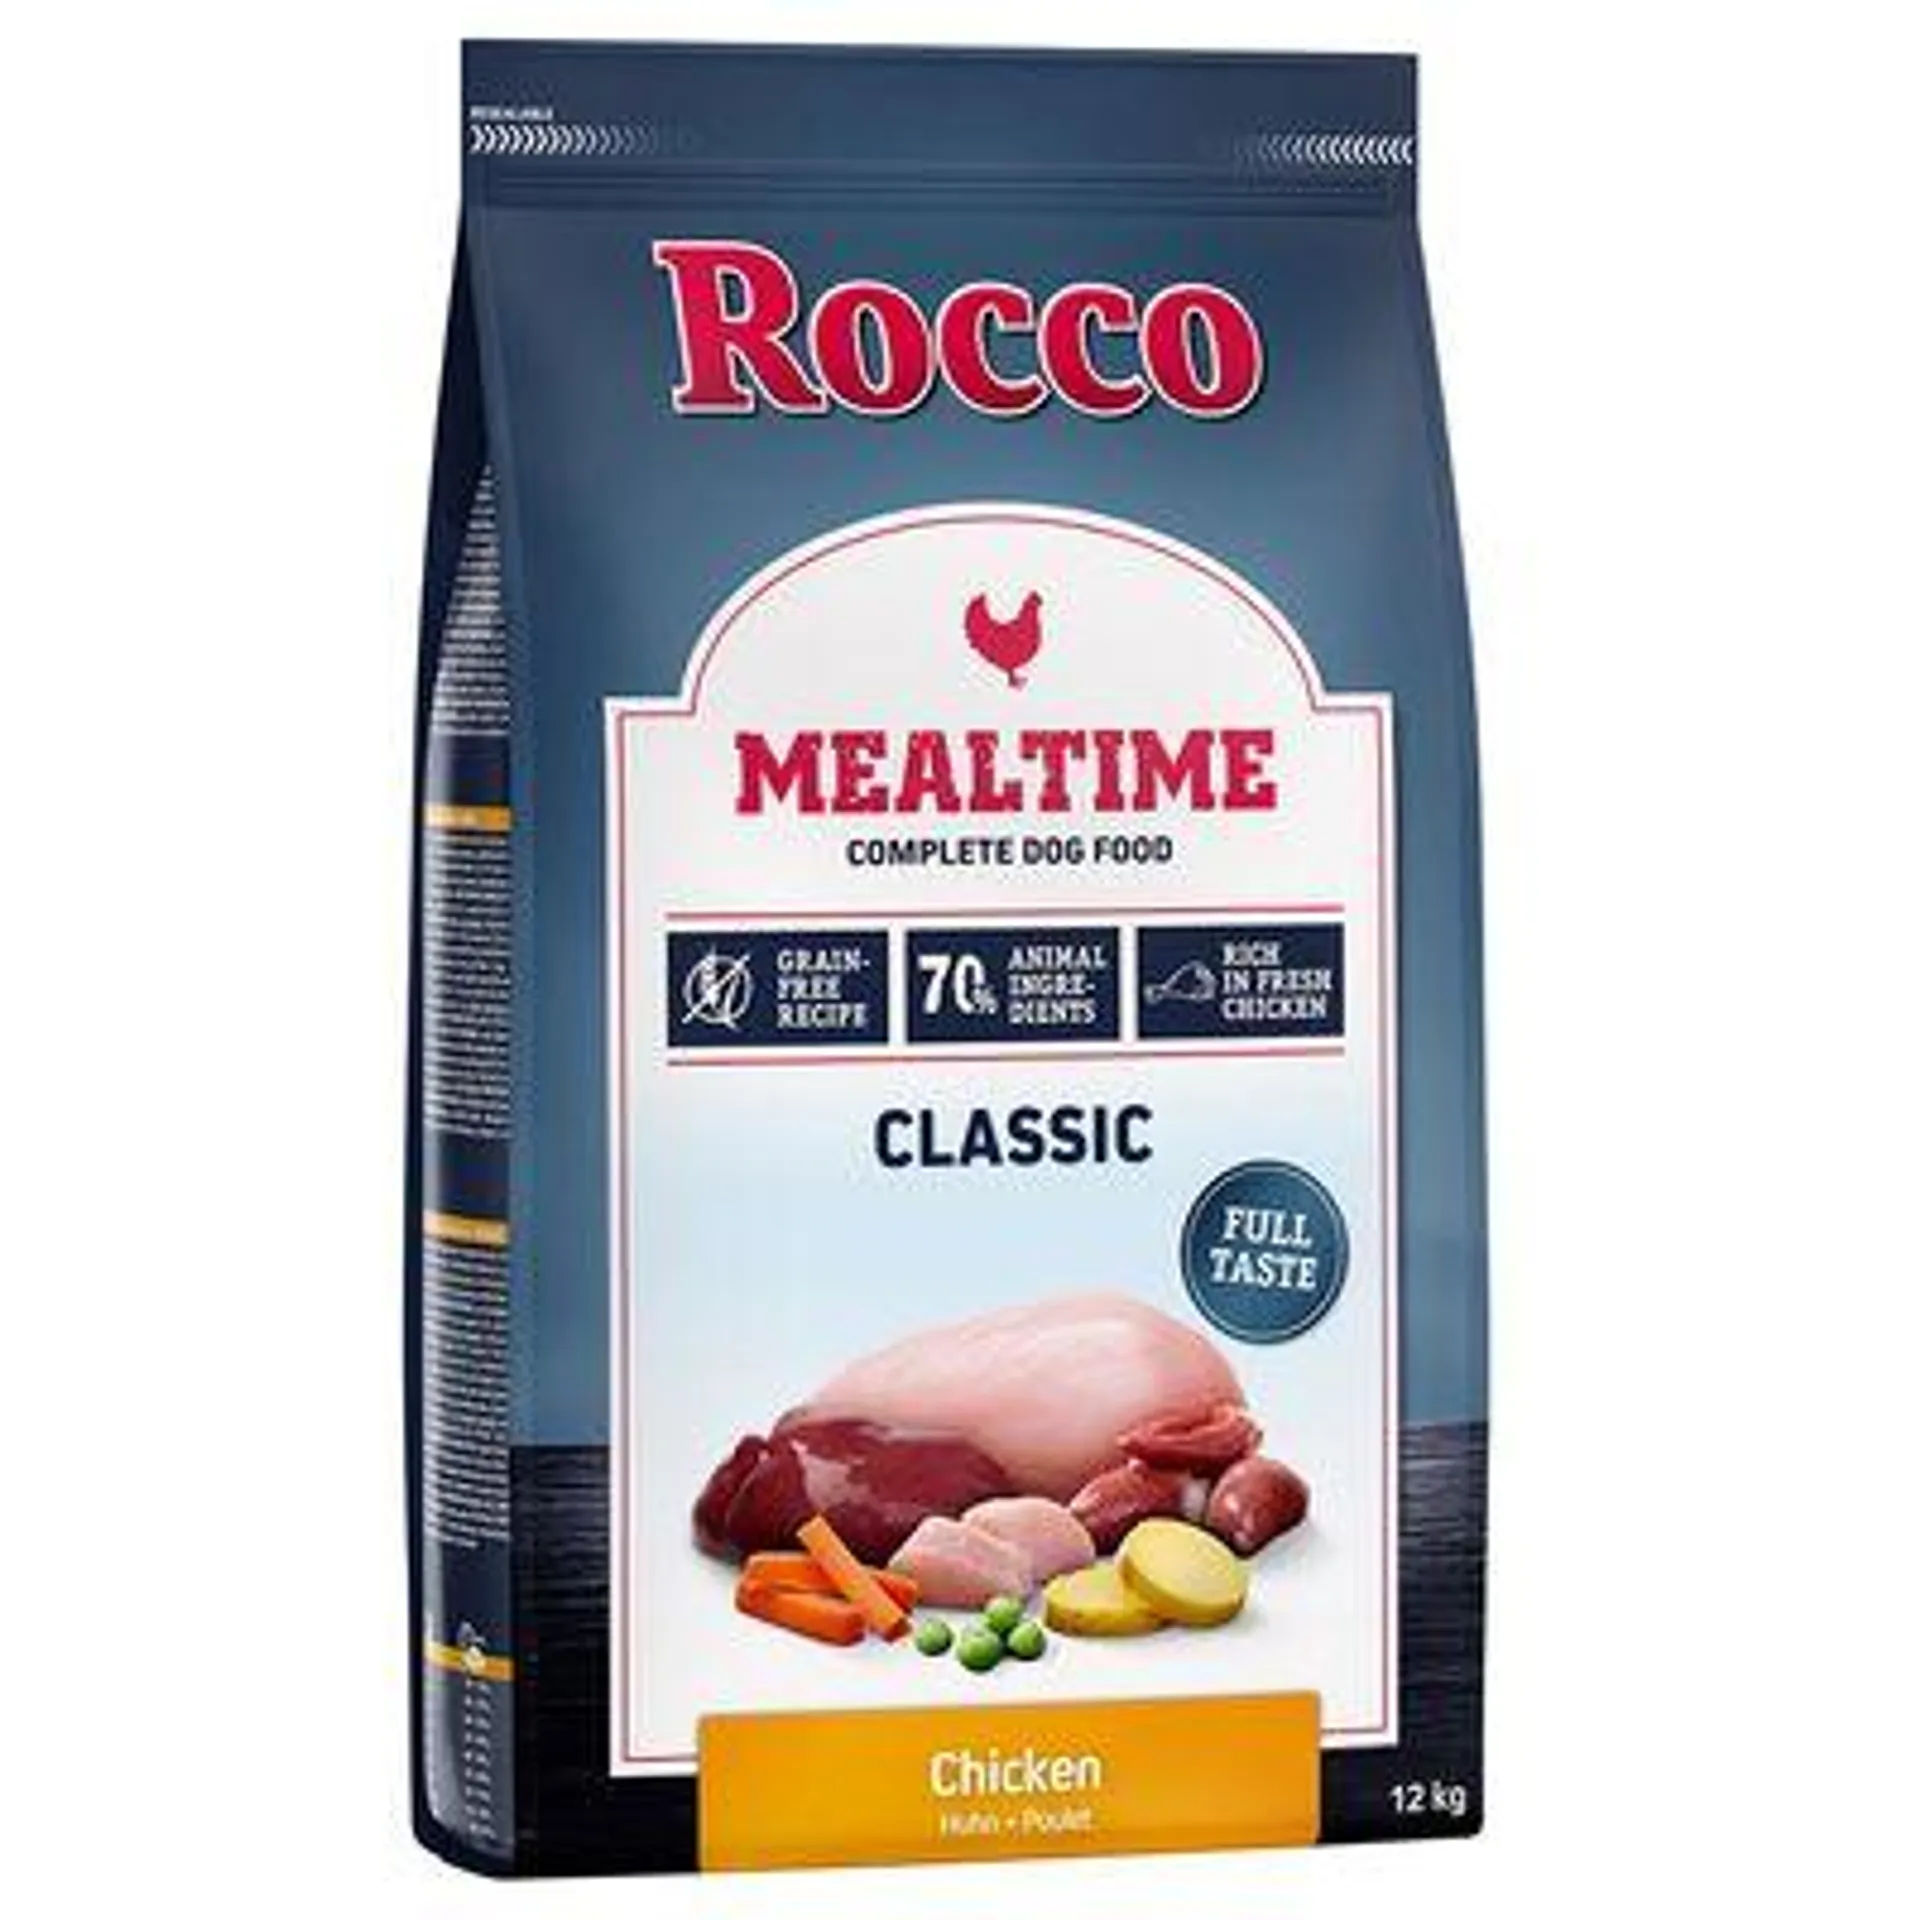 Croquettes Rocco Mealtime 12 kg pour chien à prix mini !